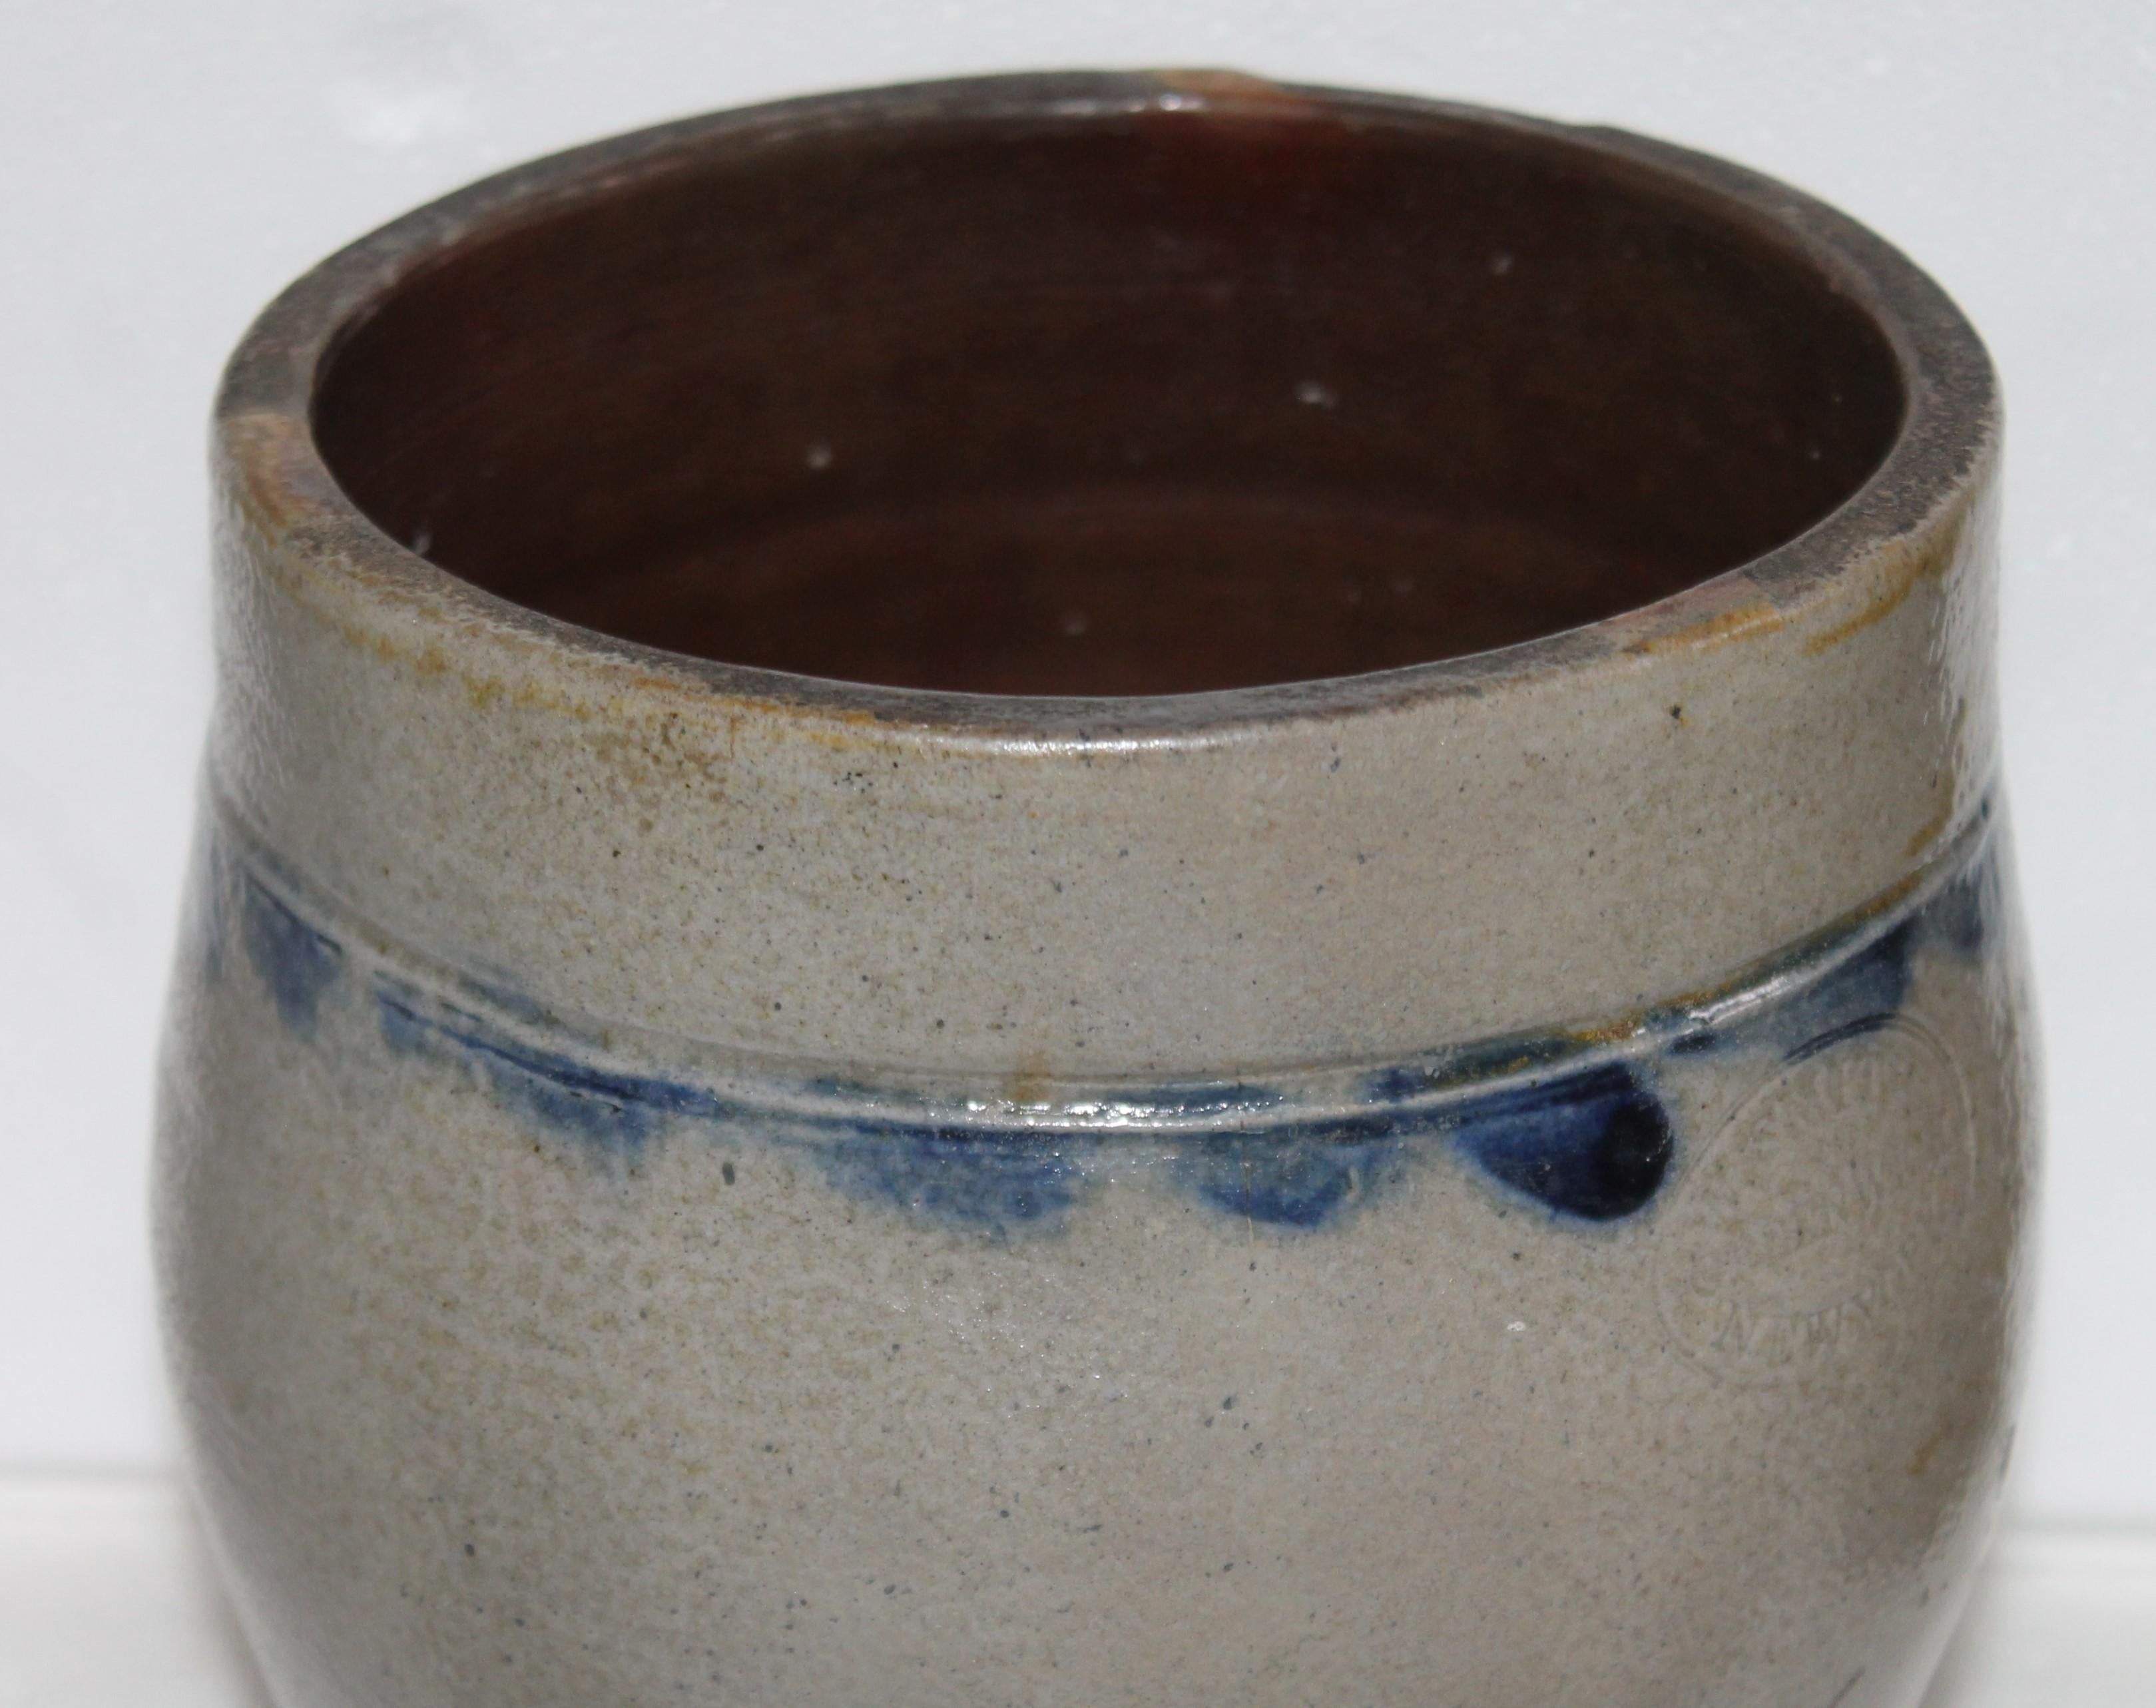 Salt glazed stone ware jar with 